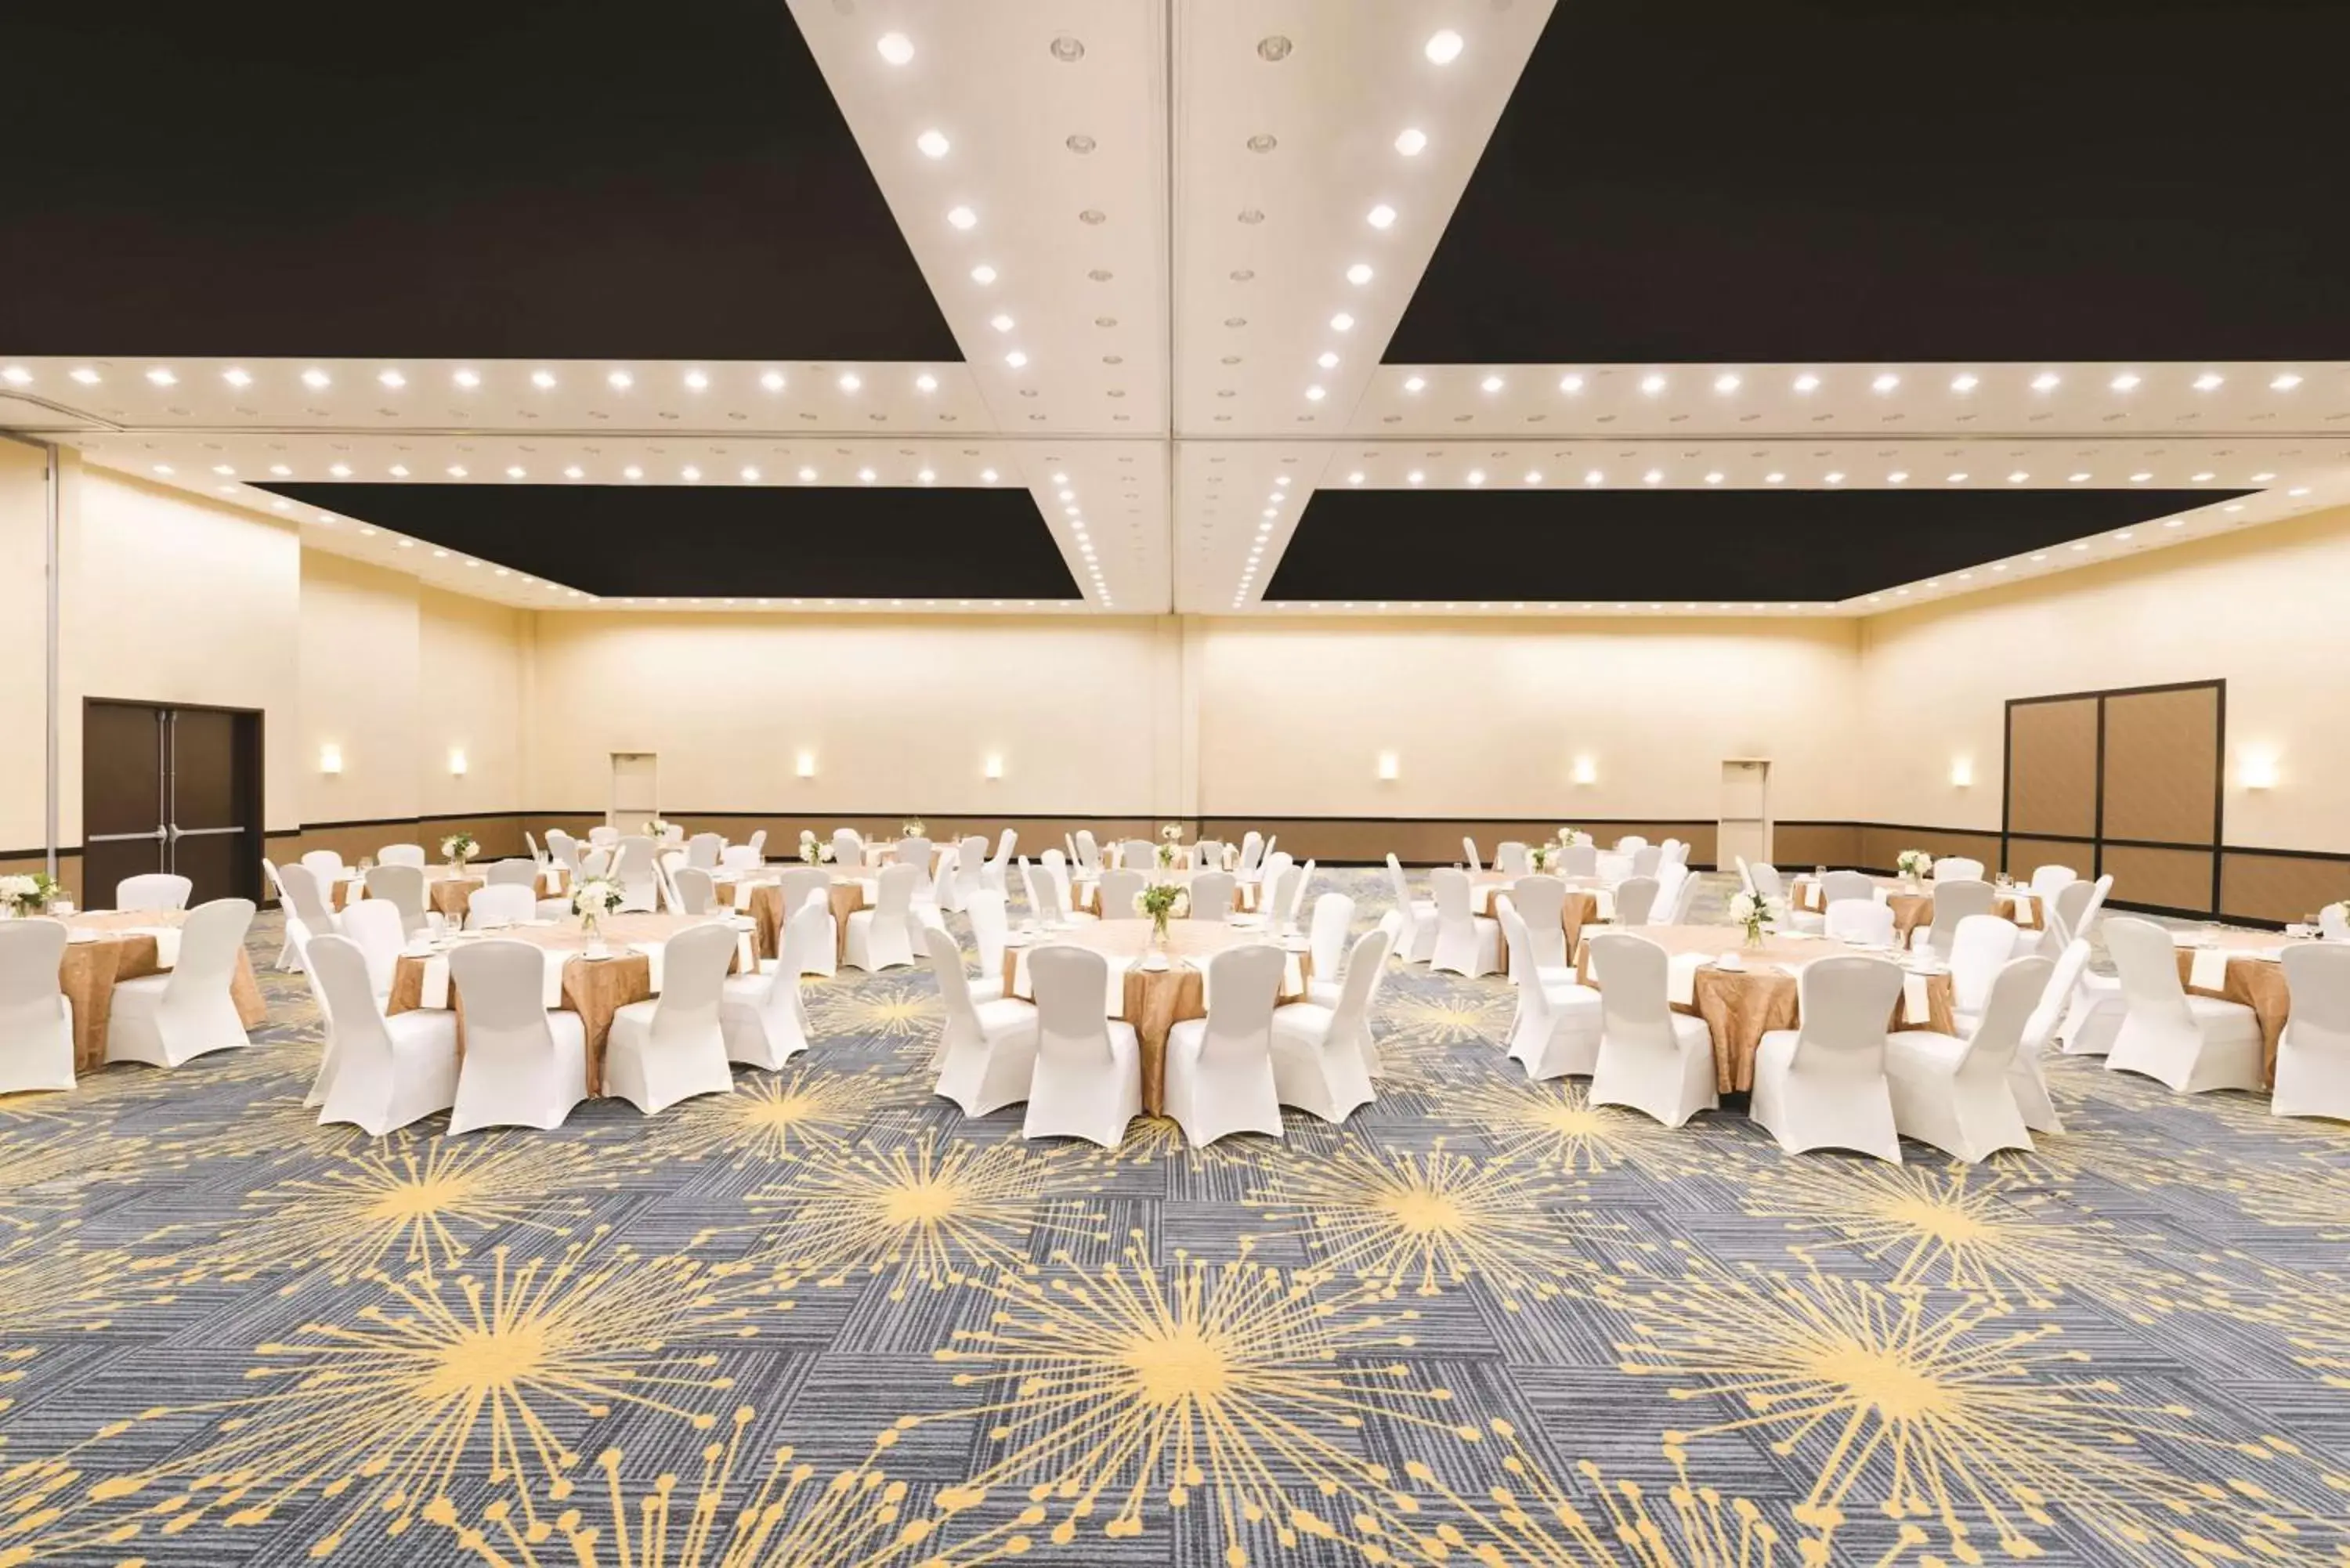 Meeting/conference room, Banquet Facilities in Hilton Garden Inn Fargo